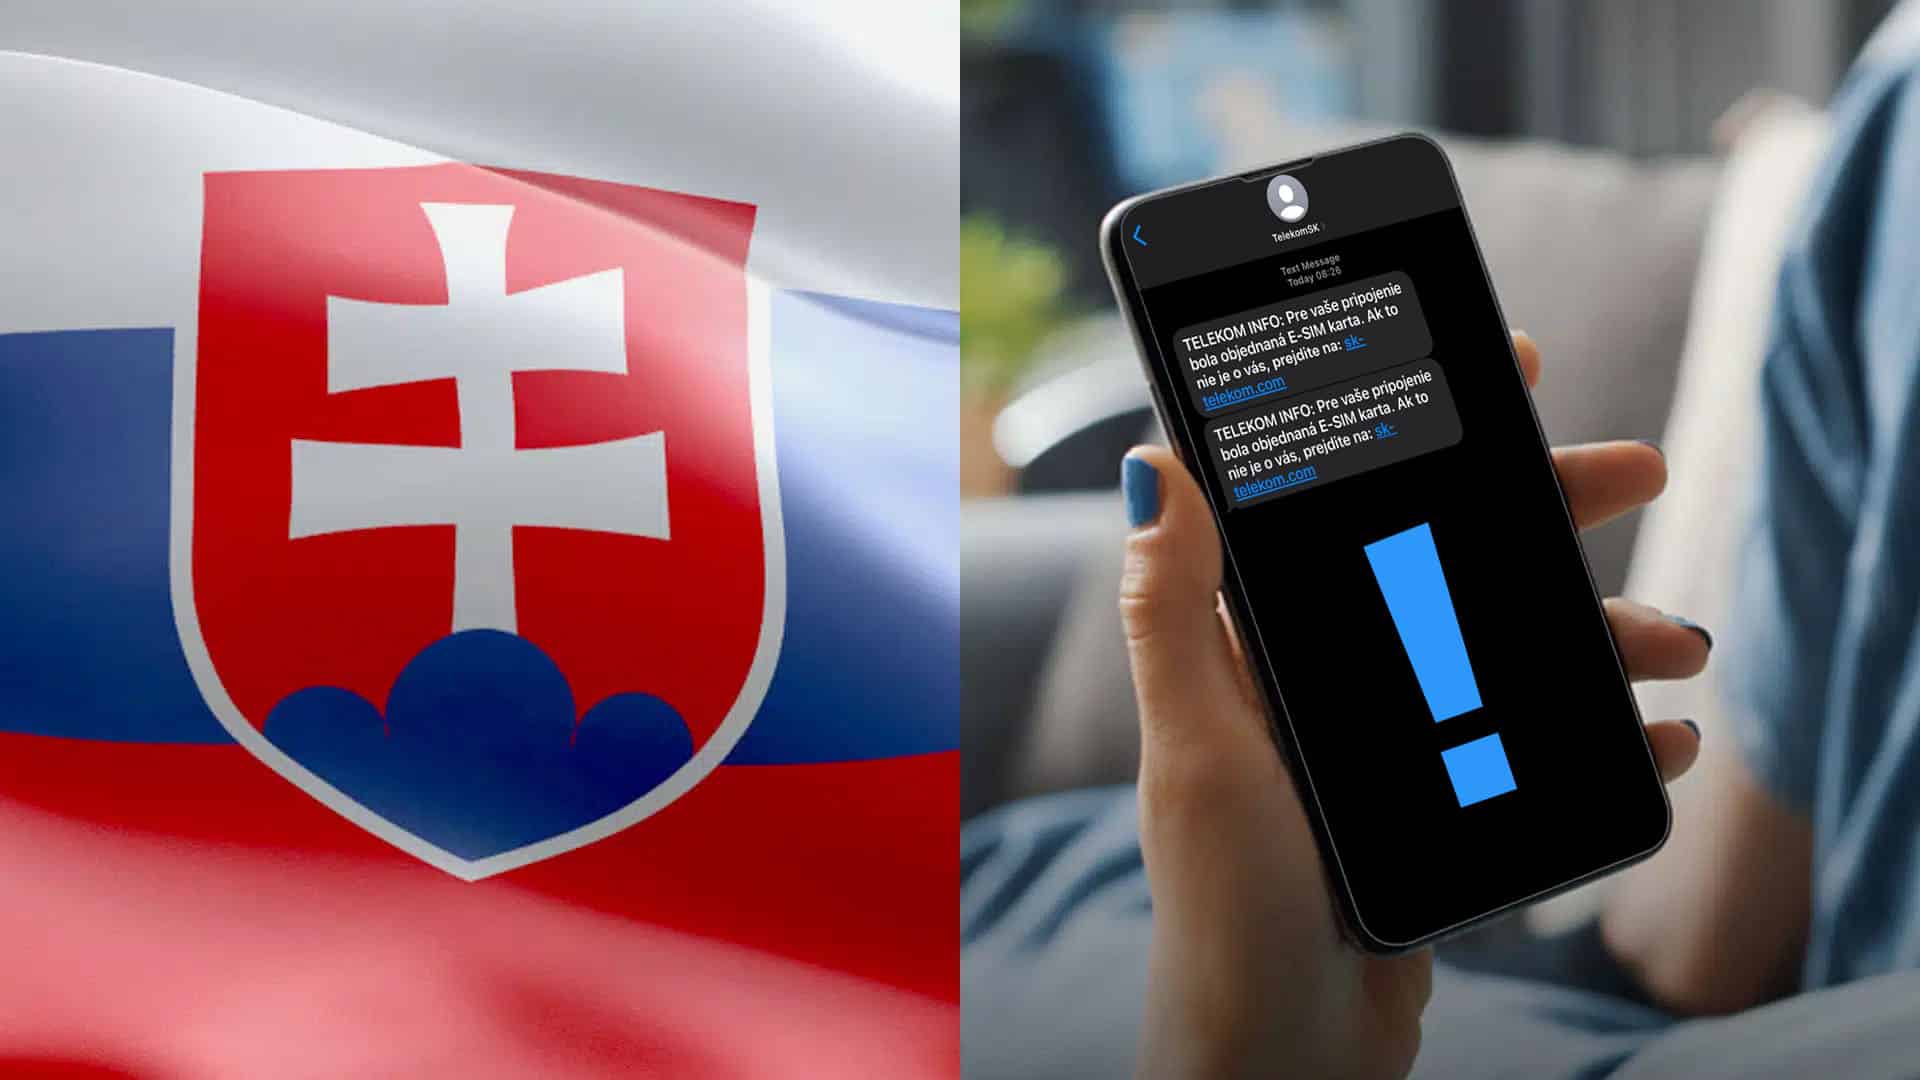 slovensko phishing operator